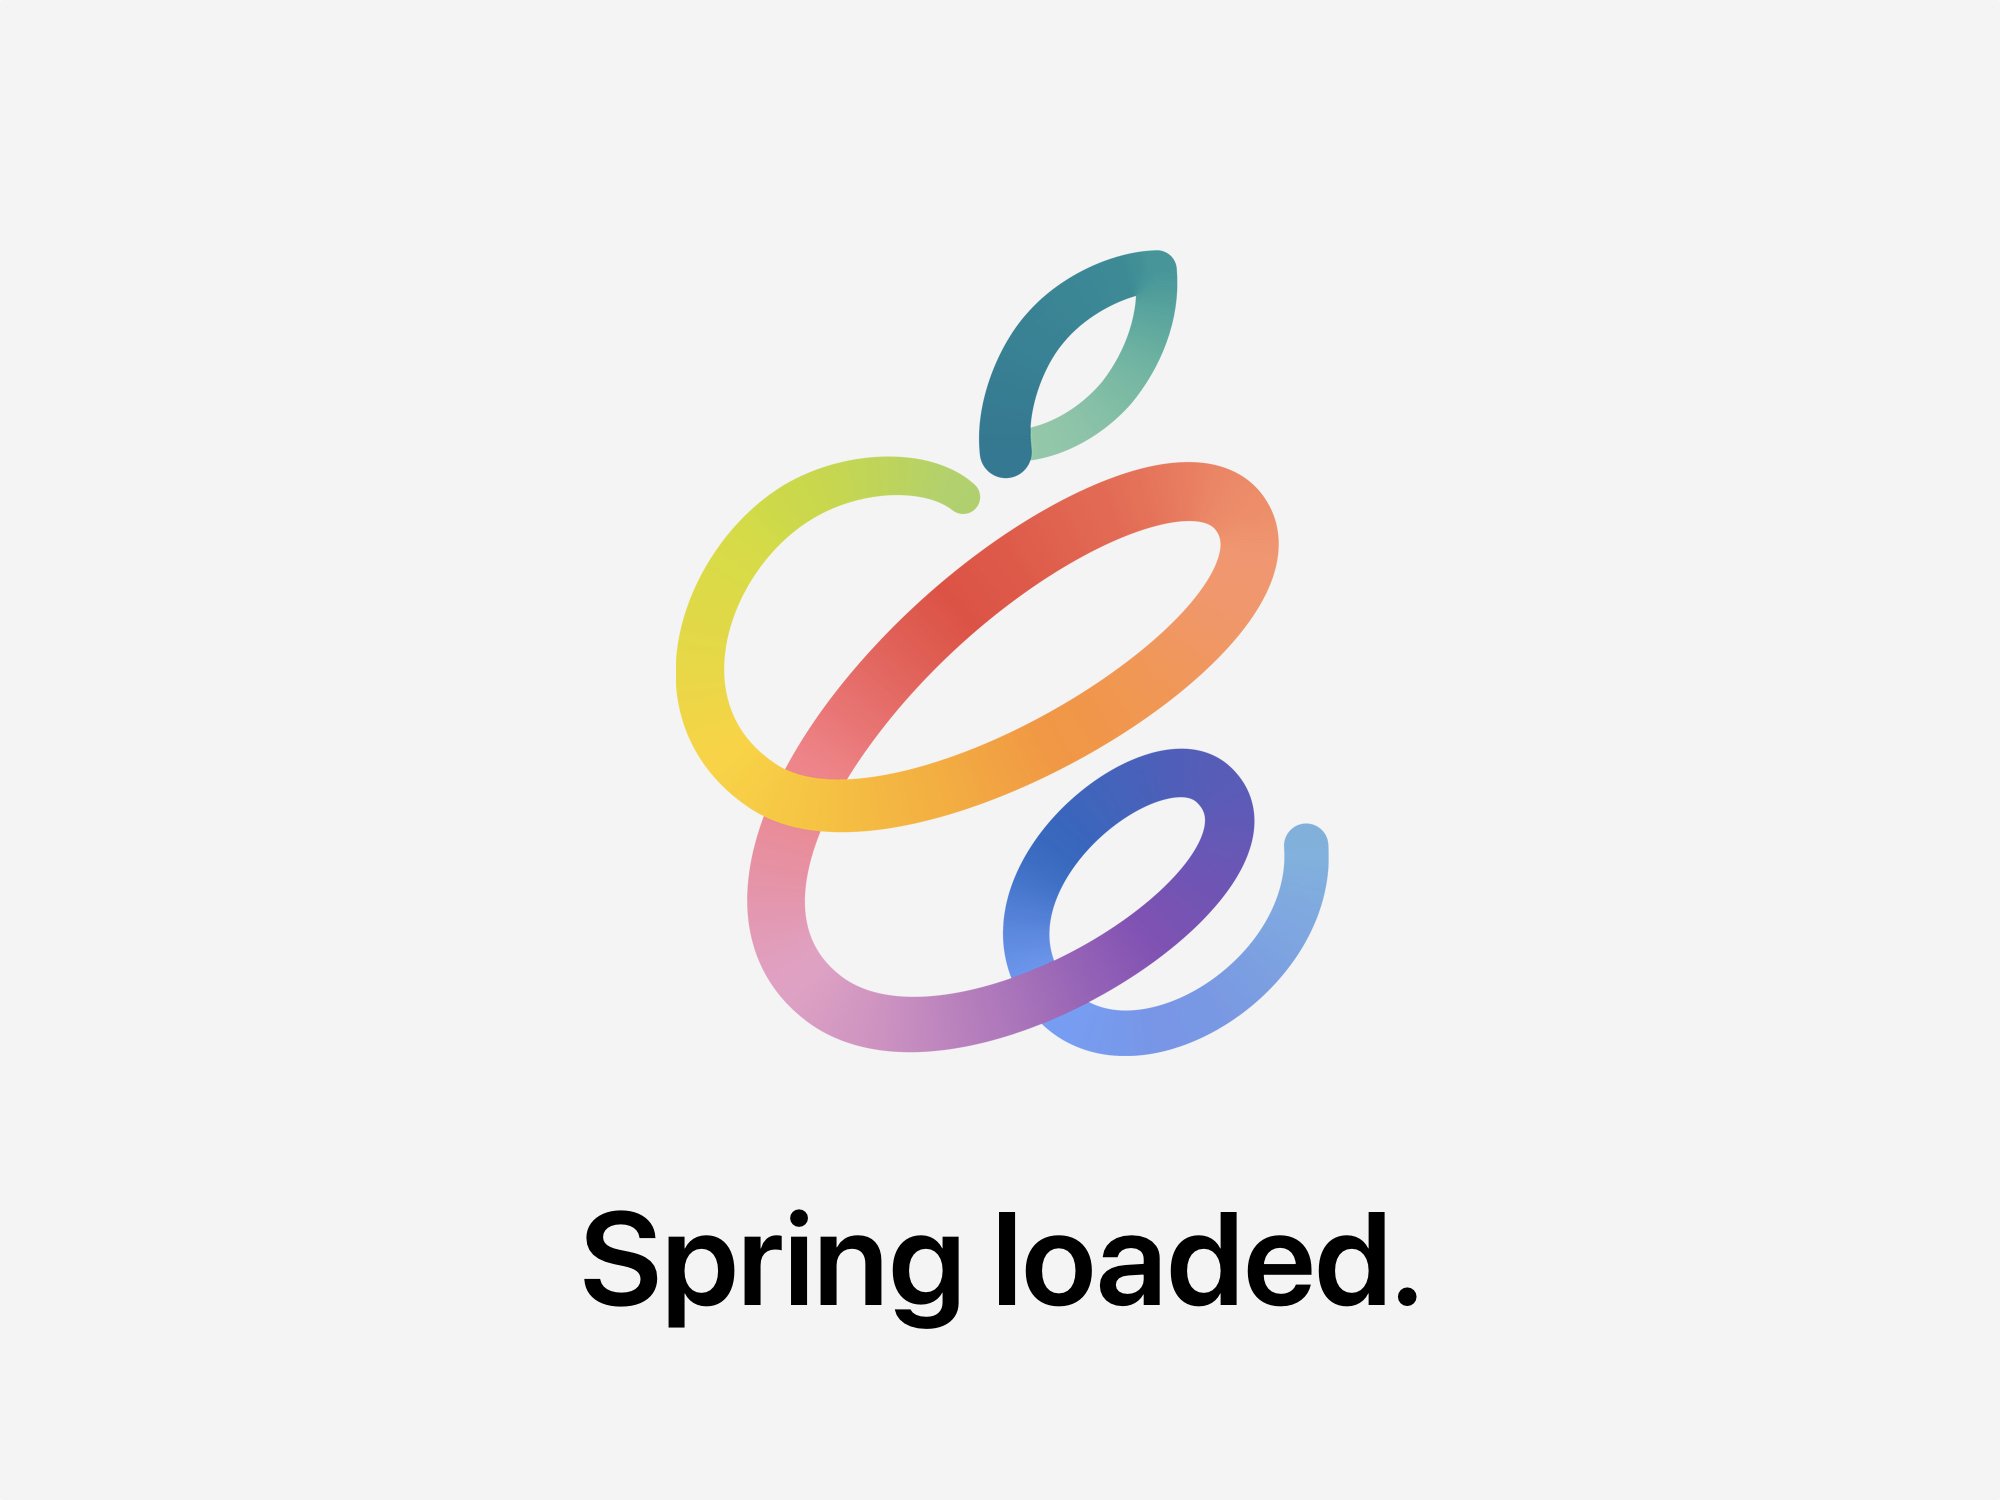 Apple Event April 2021 Spring Loaded